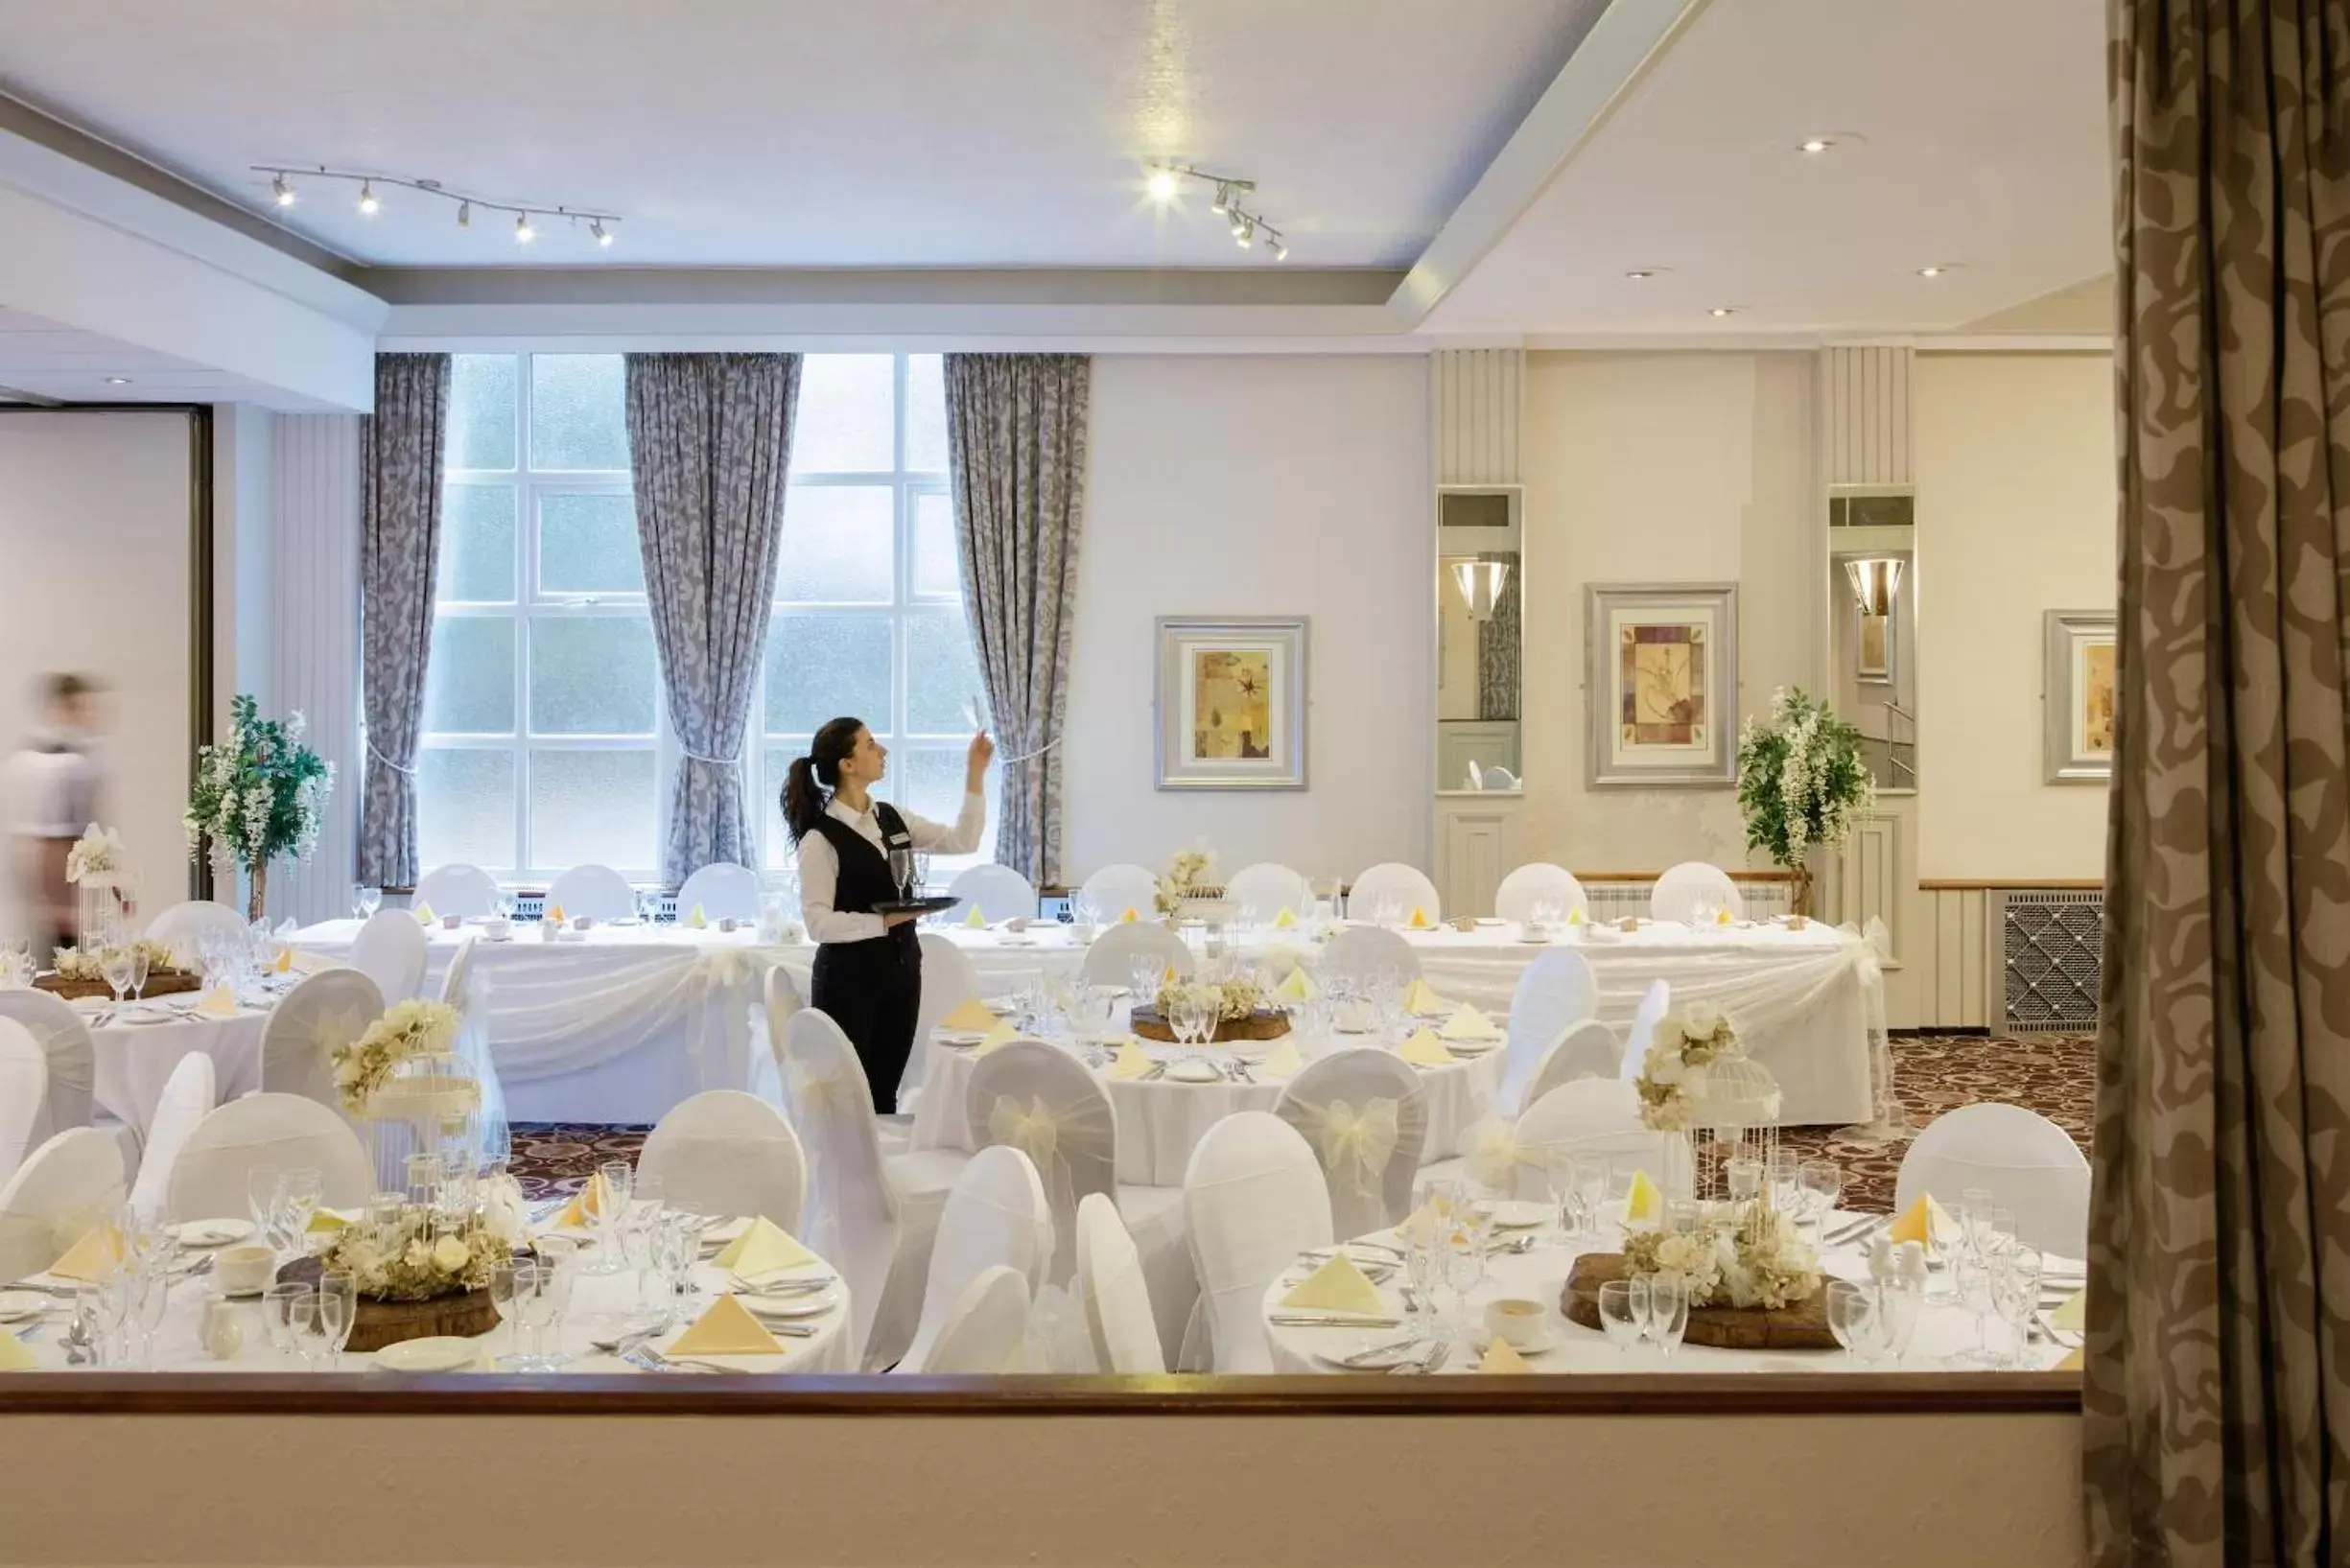 Banquet/Function facilities, Banquet Facilities in Alma Lodge Hotel